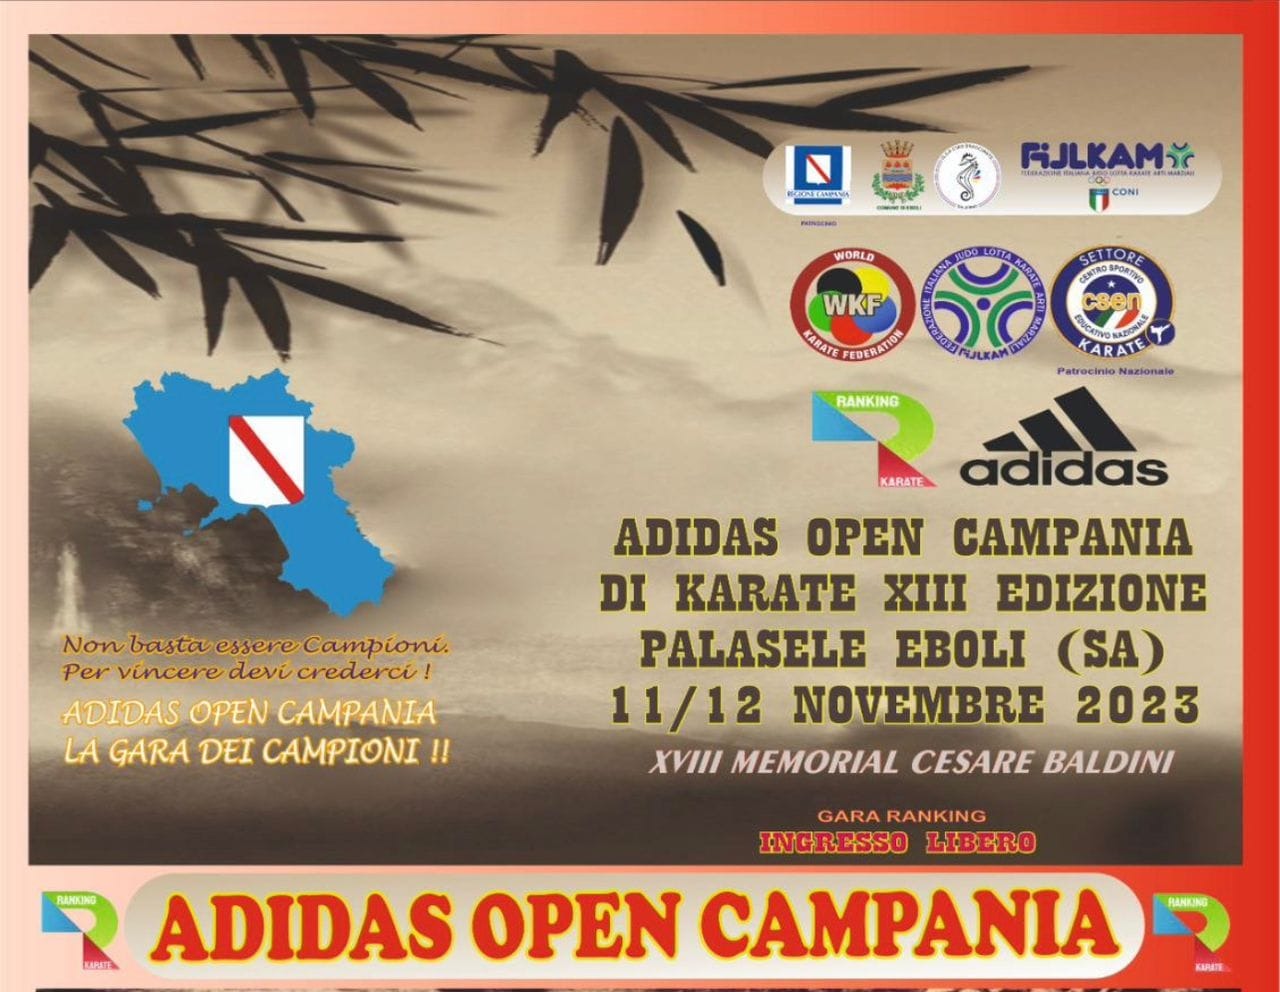 المنتخب الوطني للكاراتيه يشارك في بطولة أديداس المفتوحة بإيطاليا